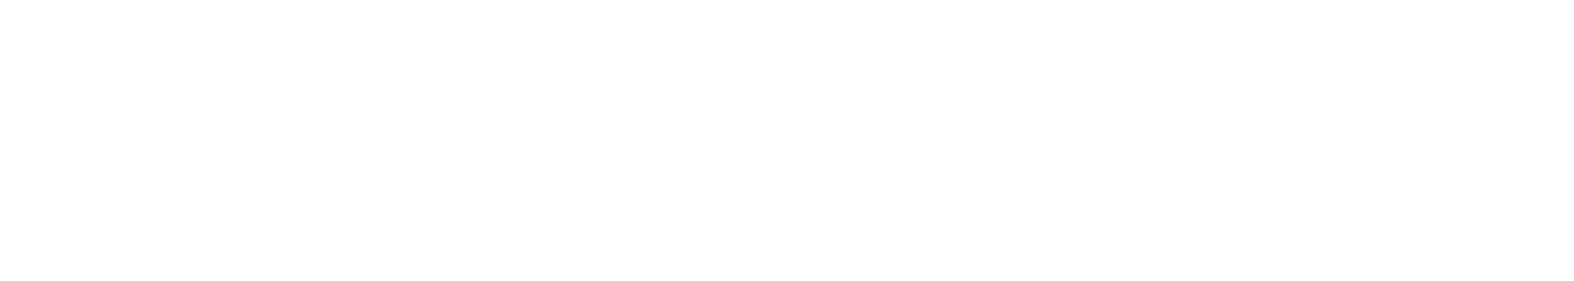 Vornado Realty Trust
 logo large for dark backgrounds (transparent PNG)